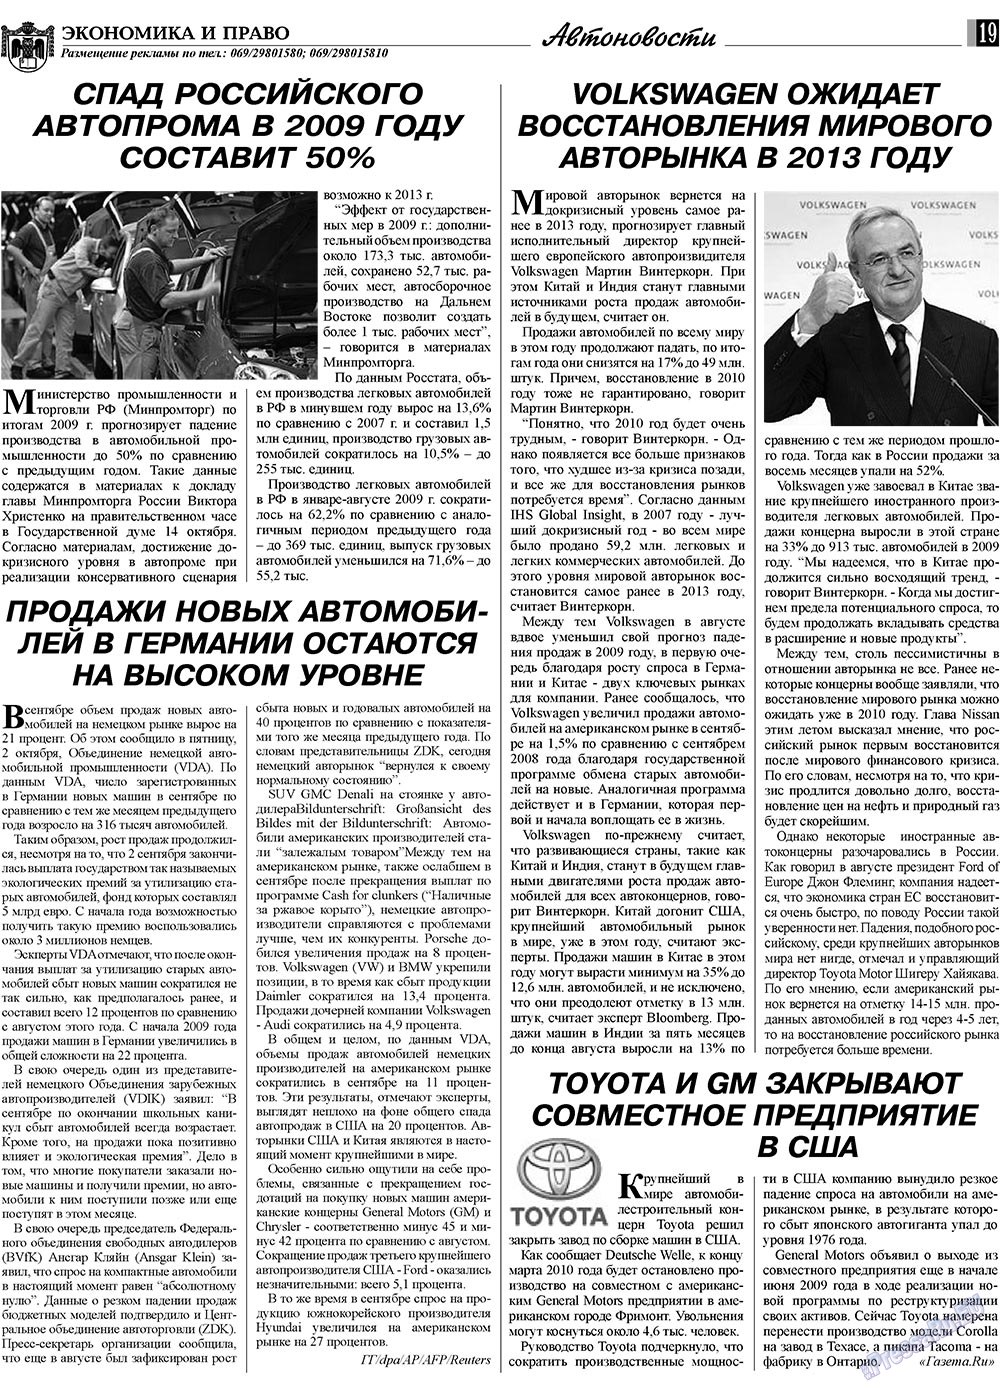 Экономика и право, газета. 2009 №11 стр.19